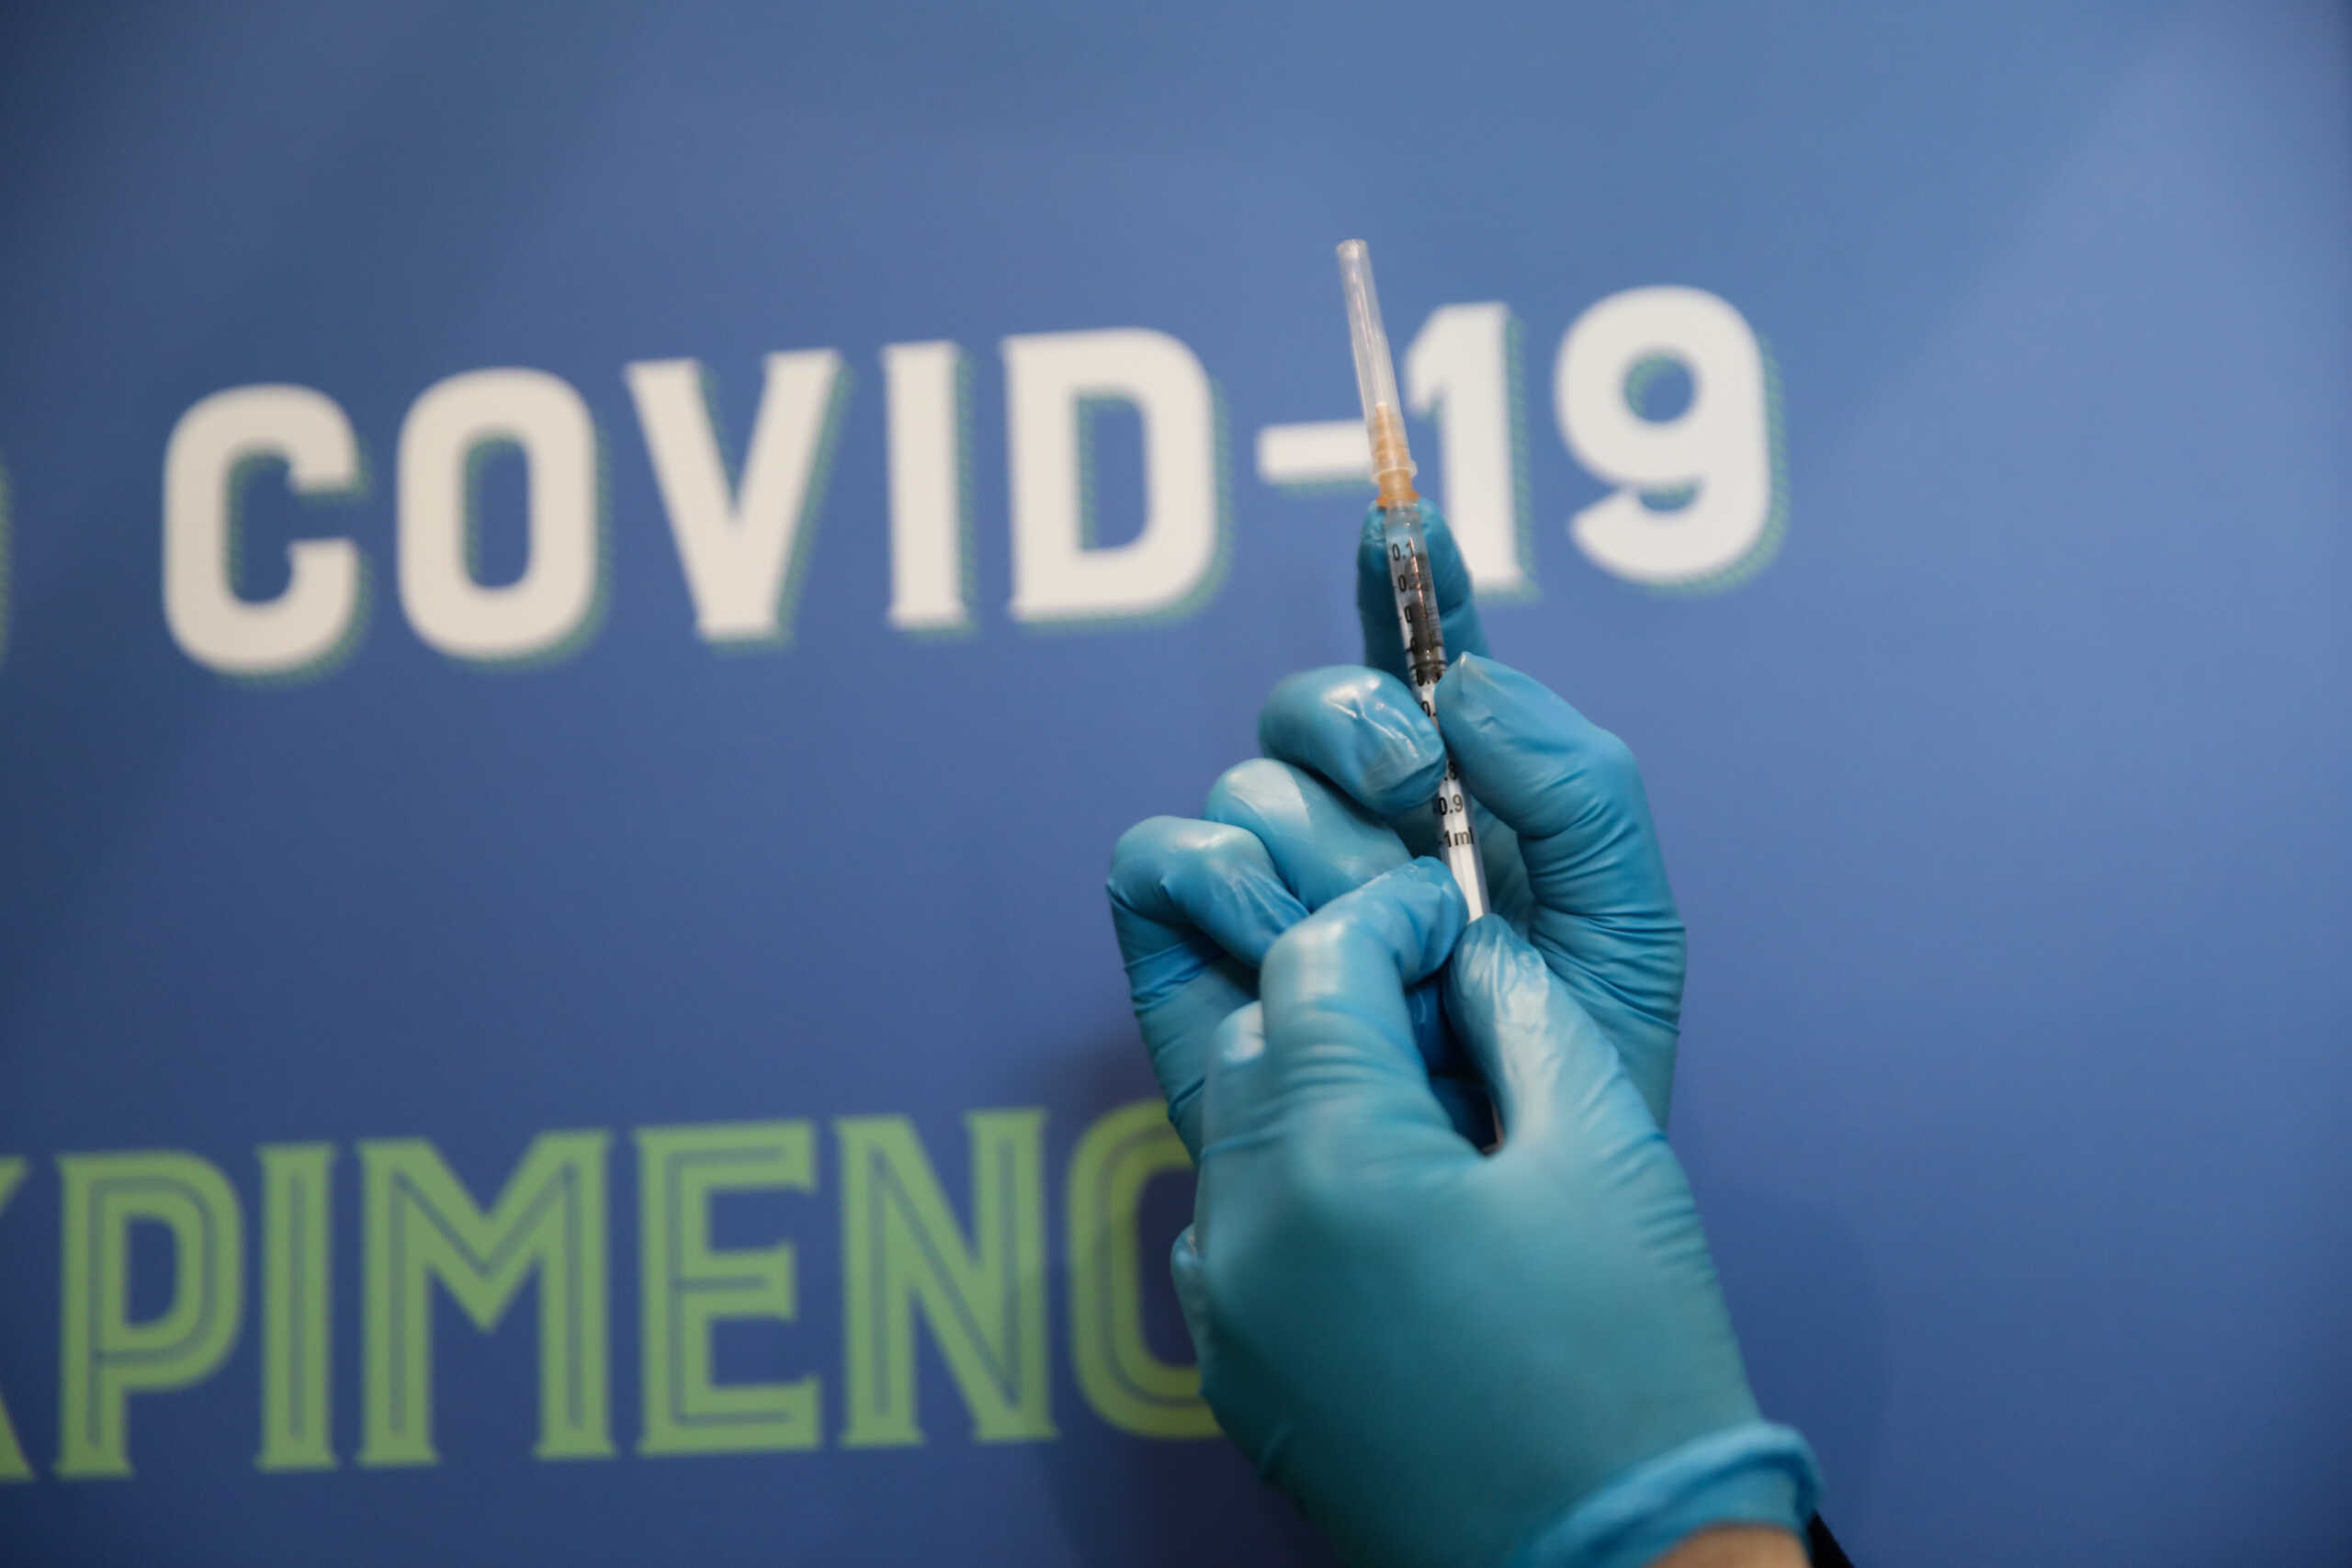 Κορονοϊός: Ασφαλή τα βρέφη που οι έγκυες μητέρες τους είχαν εμβολιαστεί κατά της Covid-19 αναφέρει μελέτη